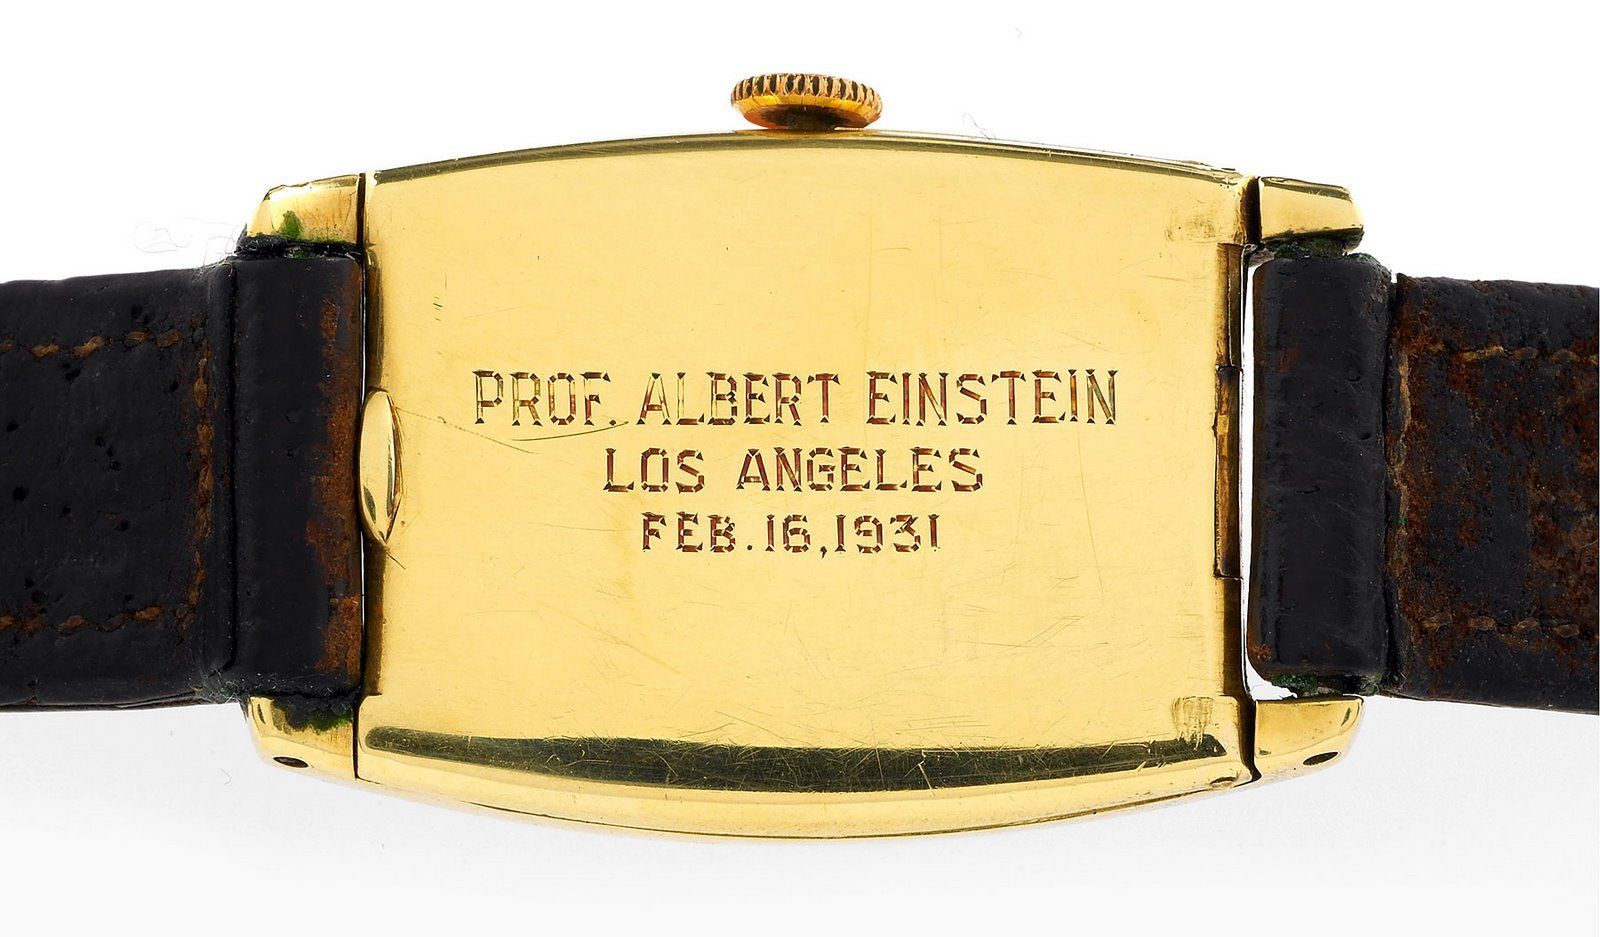 Гравировка на задней части корпуса золотого Longines "Профессор Альберт Эйнштейн, Лос-Анджелес, 16 февраля 1931 года"